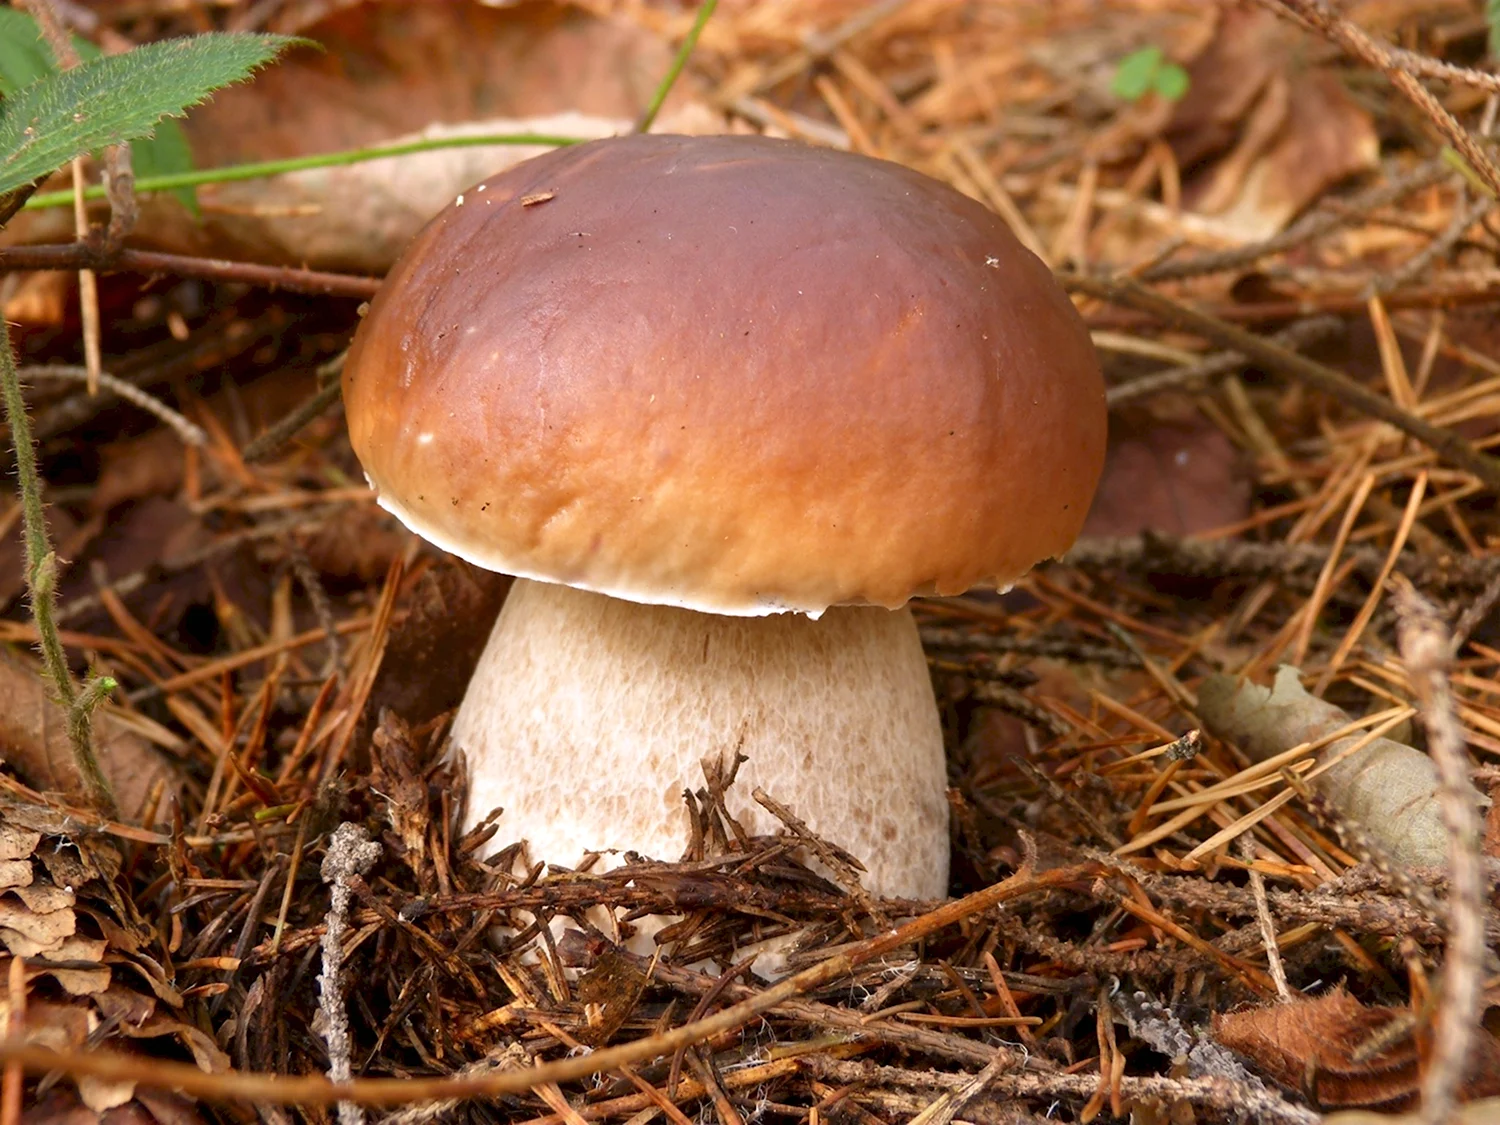 Белый гриб Боровик